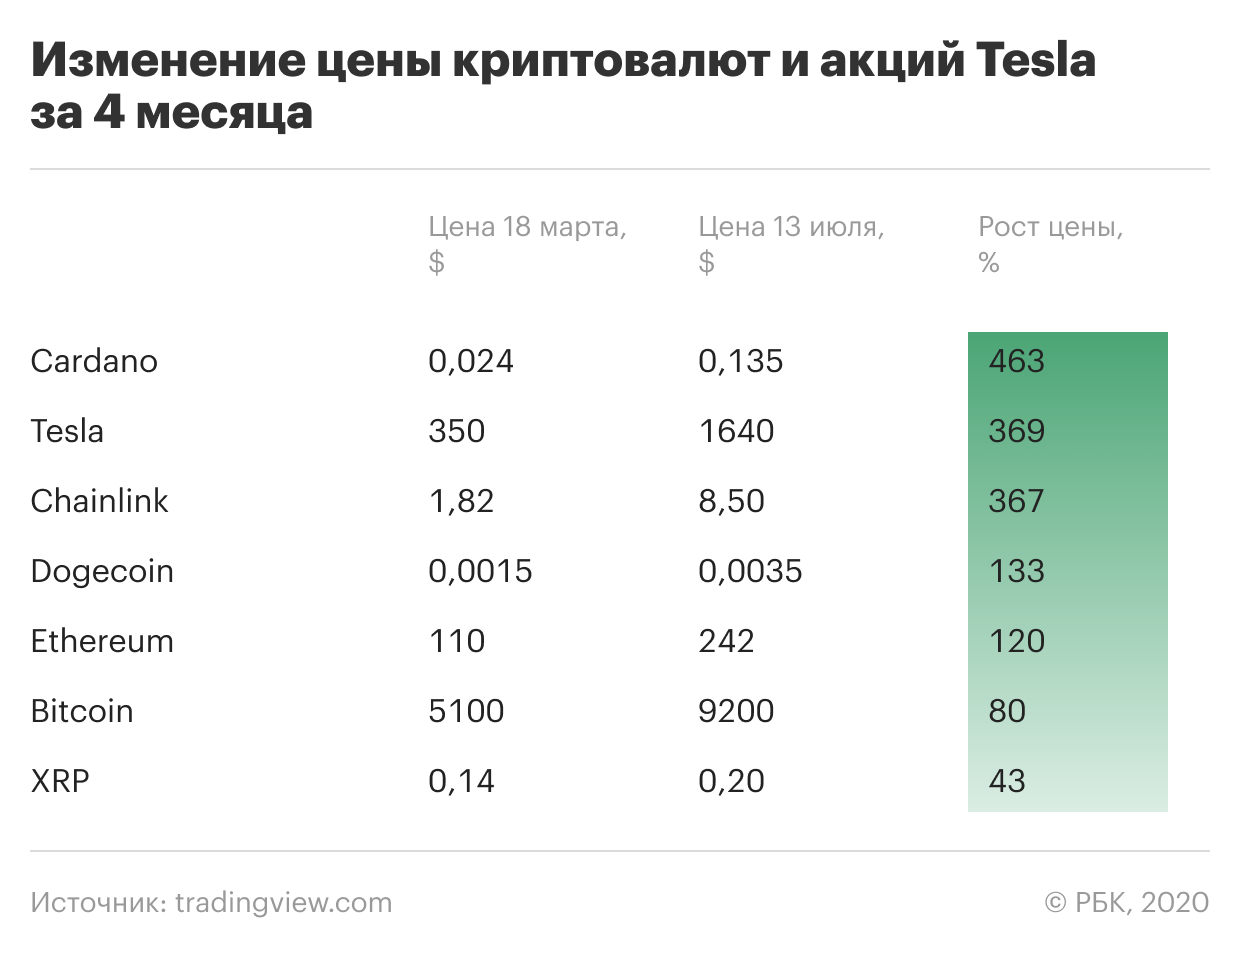 На момент создания таблицы акции компании Tesla стоили $1640